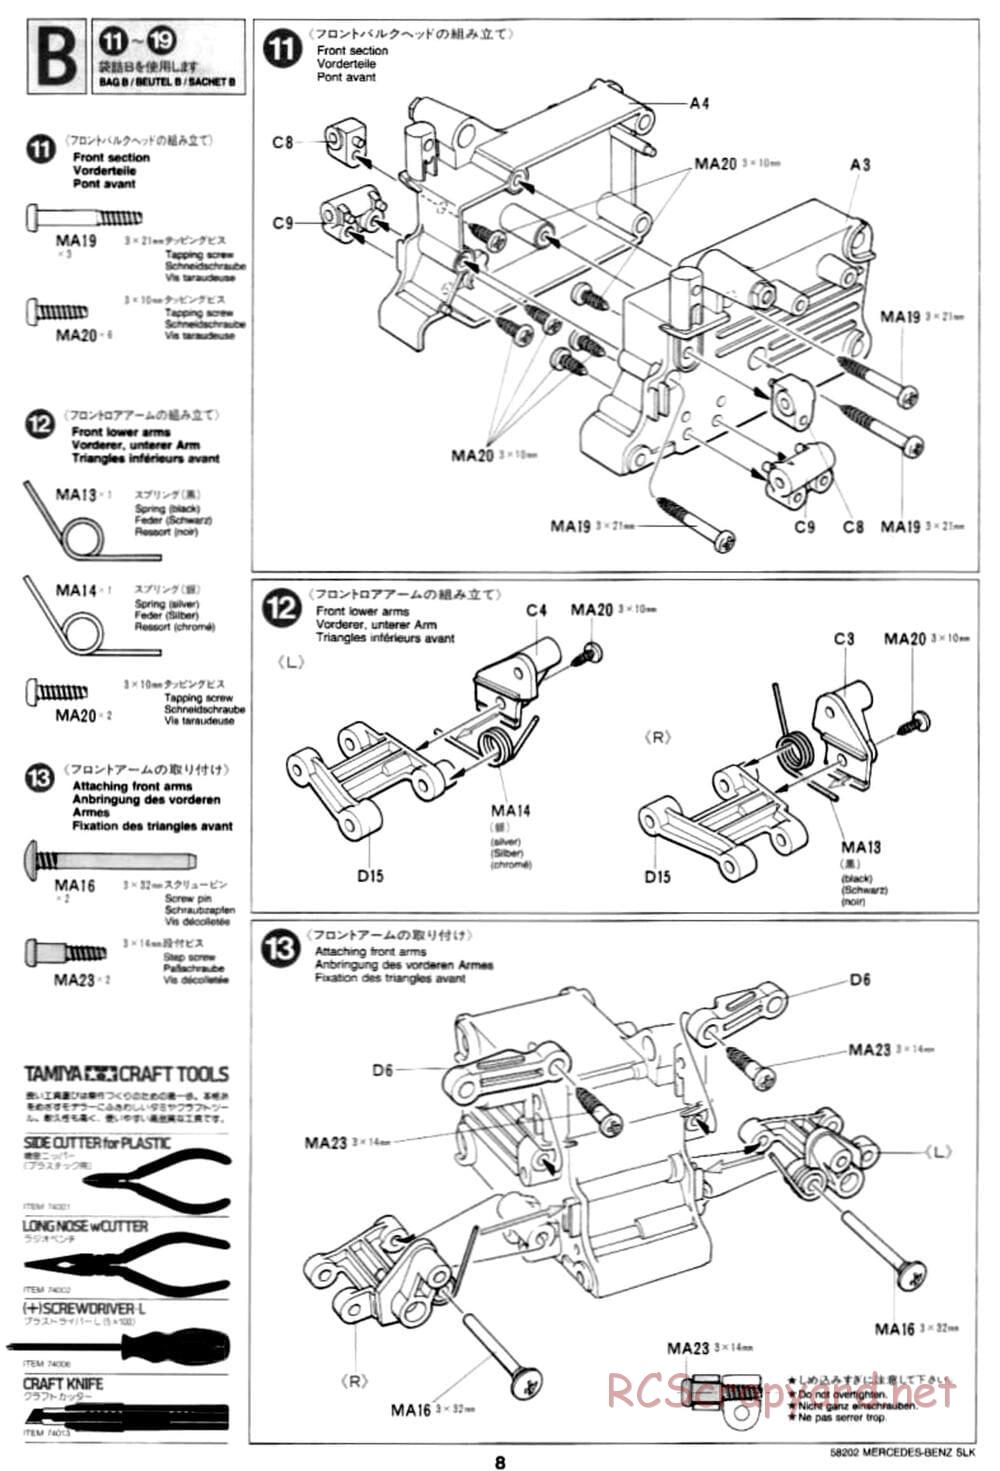 Tamiya - Mercedes-Benz SLK - M02L Chassis - Manual - Page 8